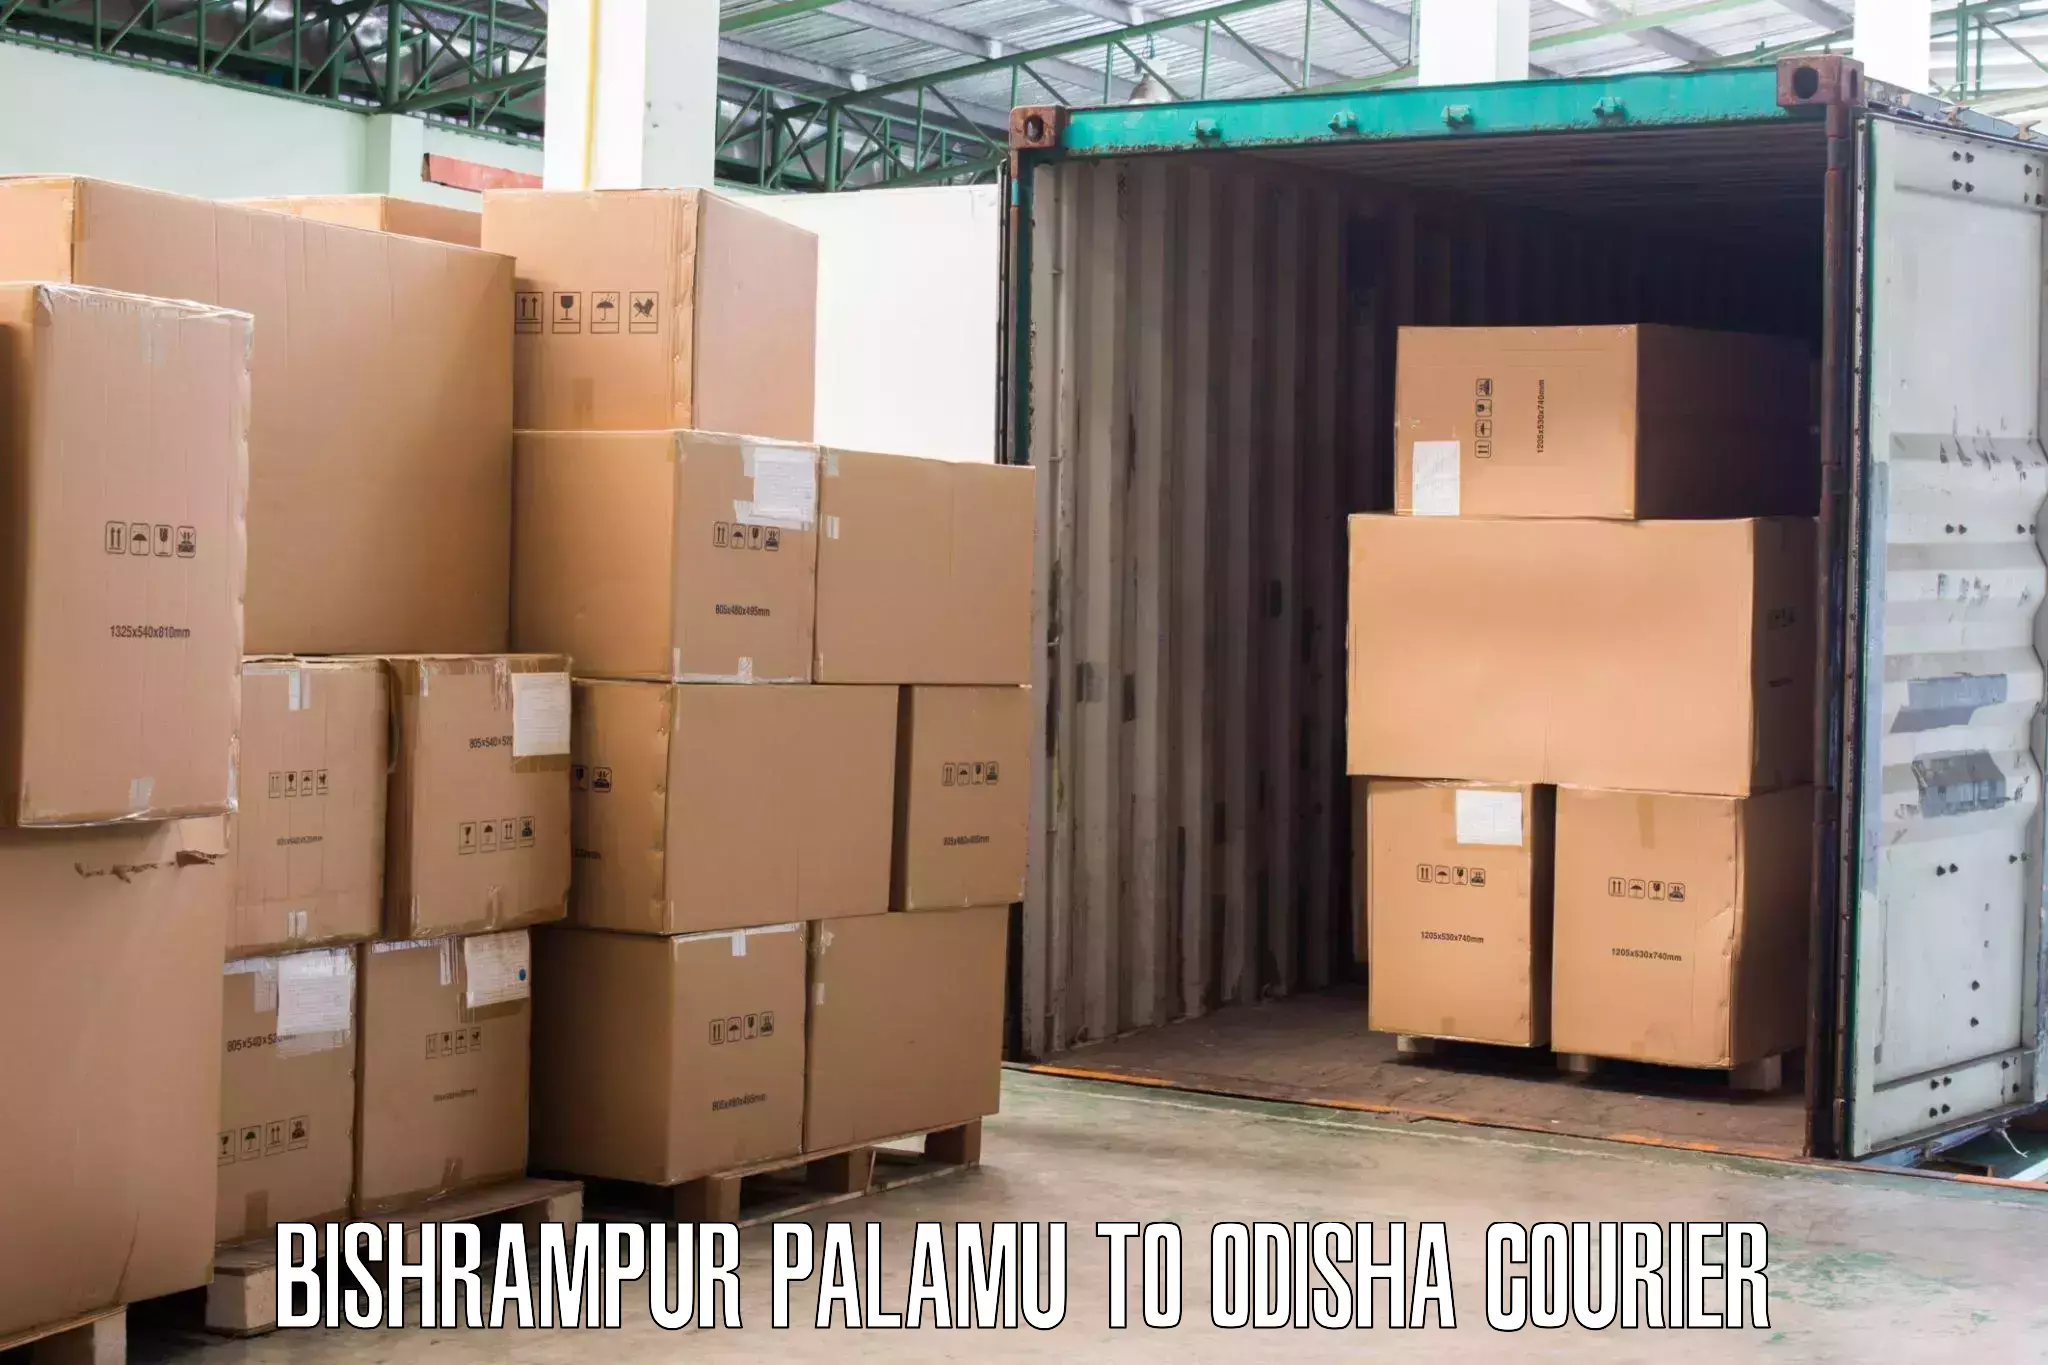 Furniture moving service Bishrampur Palamu to Jeypore